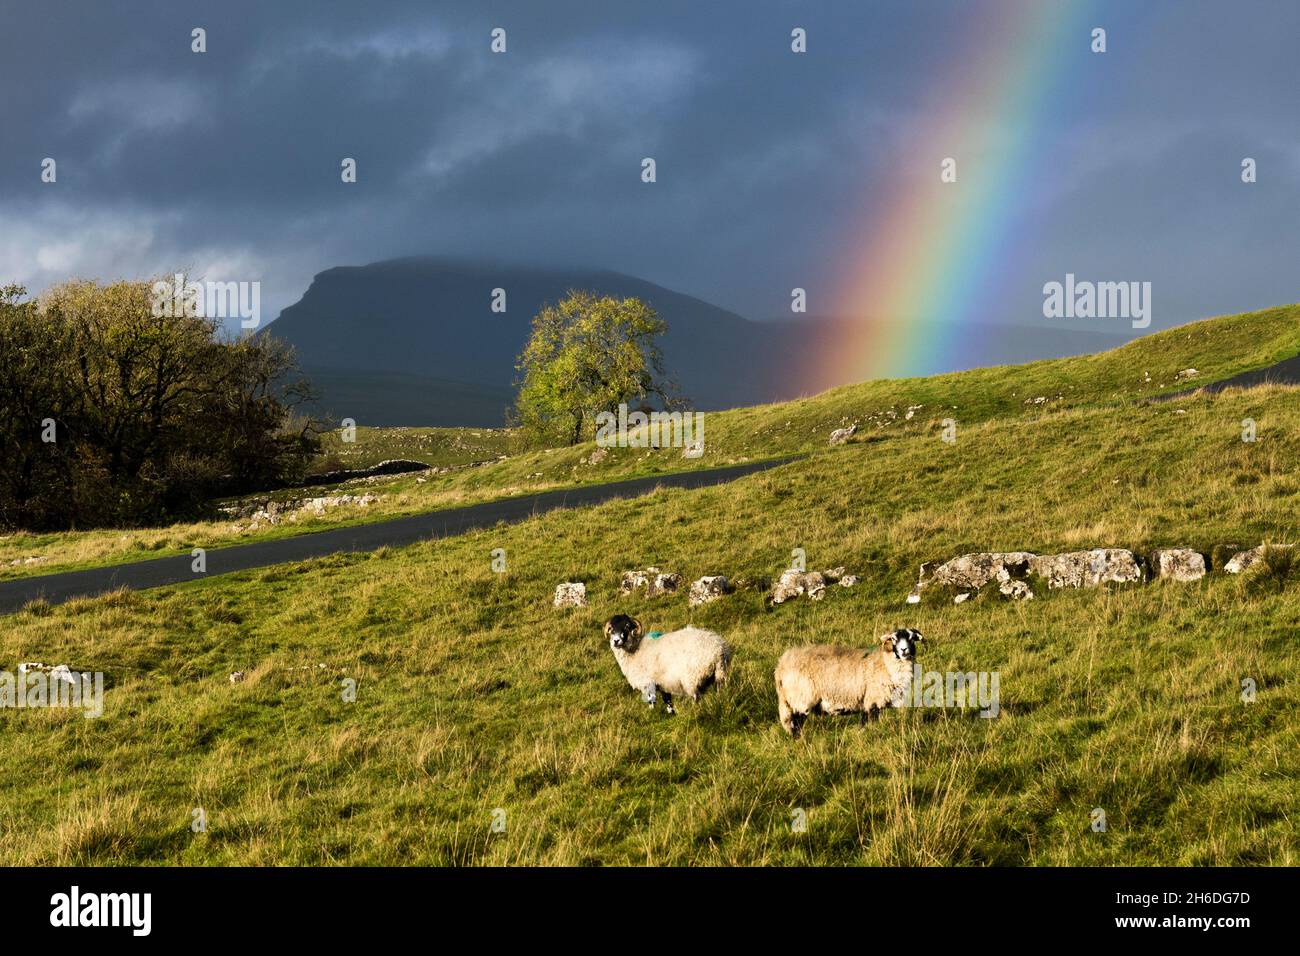 El pastoreo de ovejas en el húmedo clima otoñal al aire libre cayó sobre Langliffe, el Parque Nacional Yorkshire Dales. El pico PEN-Y-gante se ve detrás del arco iris. Foto de stock